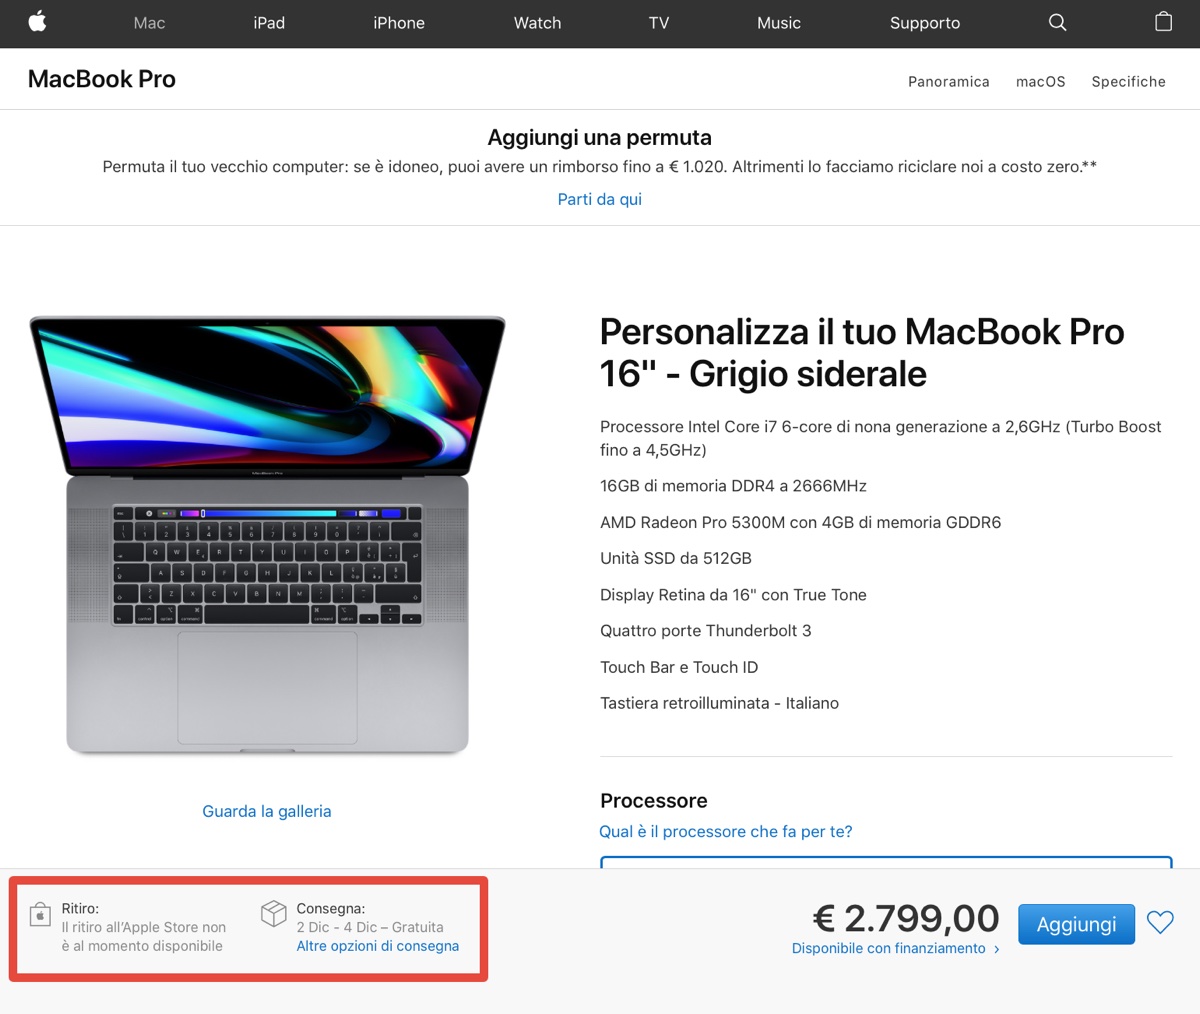 MacBook Pro 16” disponibile in USA, in Italia i tempi si allungano